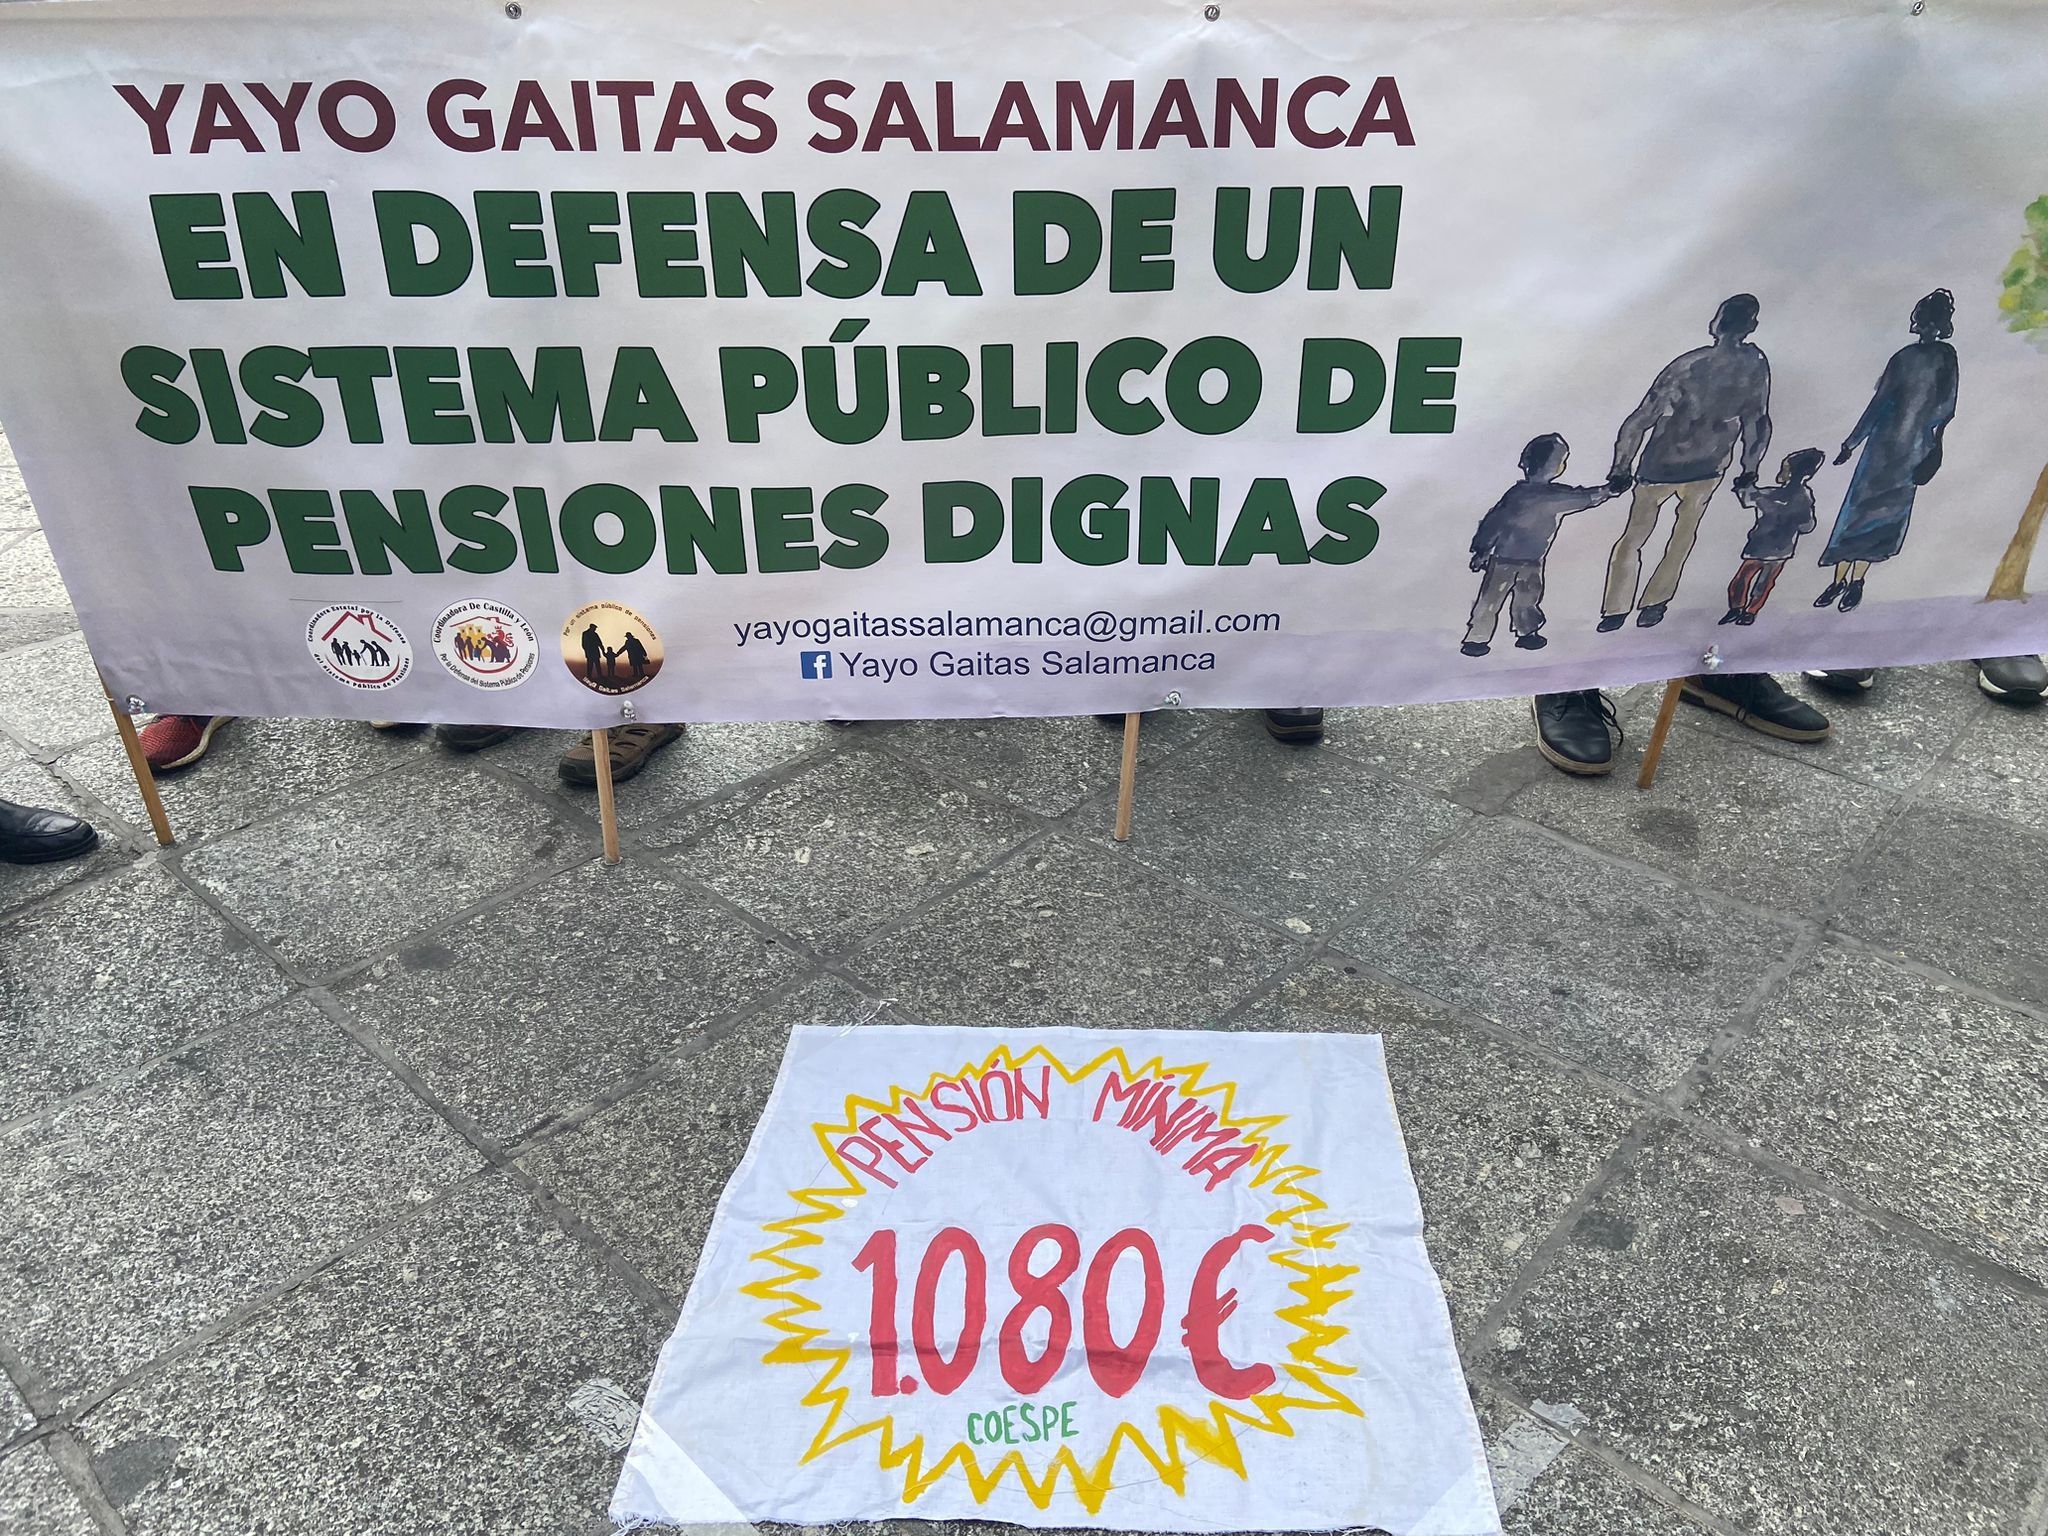 COESPE: "La subida de pensiones no compensa el poder adquisitivo perdido"